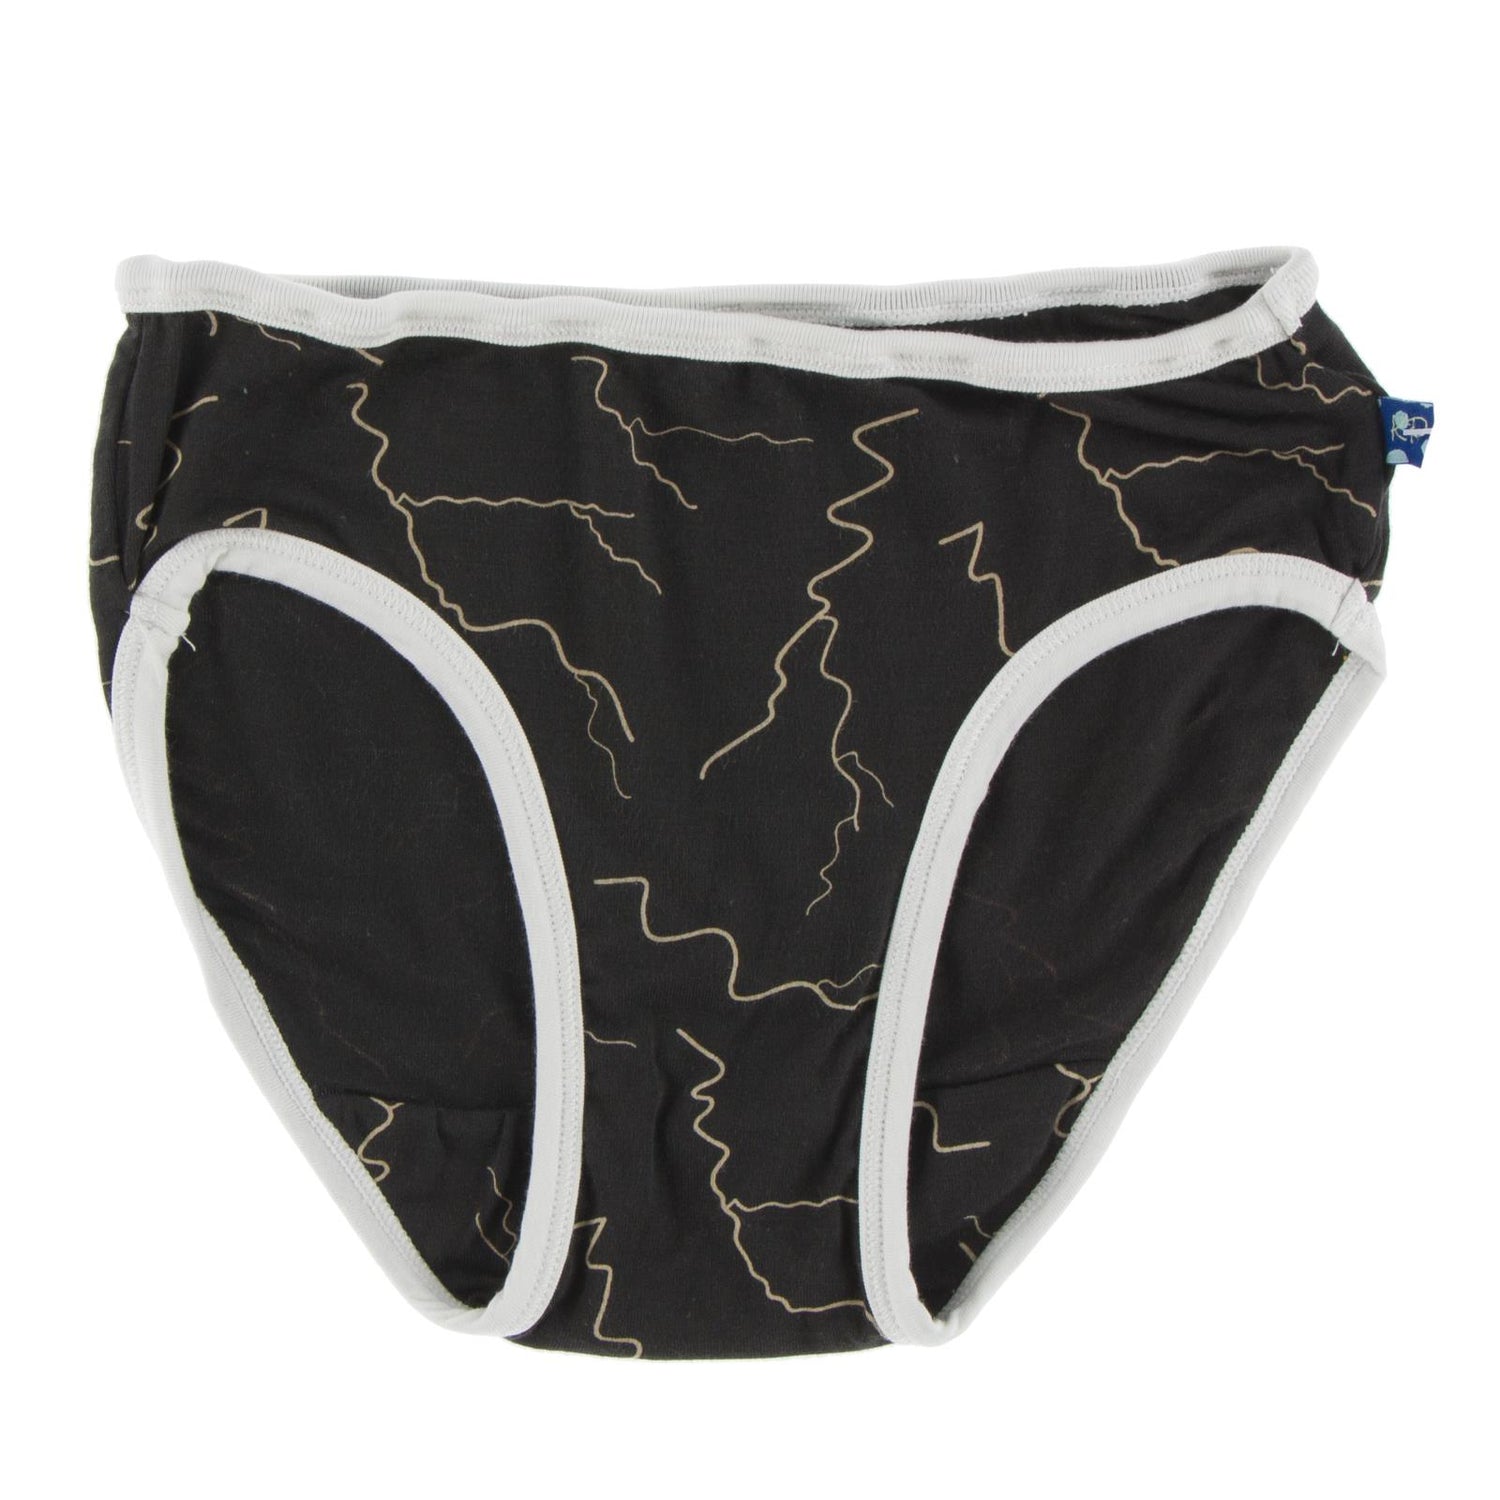 Print Underwear in Zebra Lightning with Natural Trim